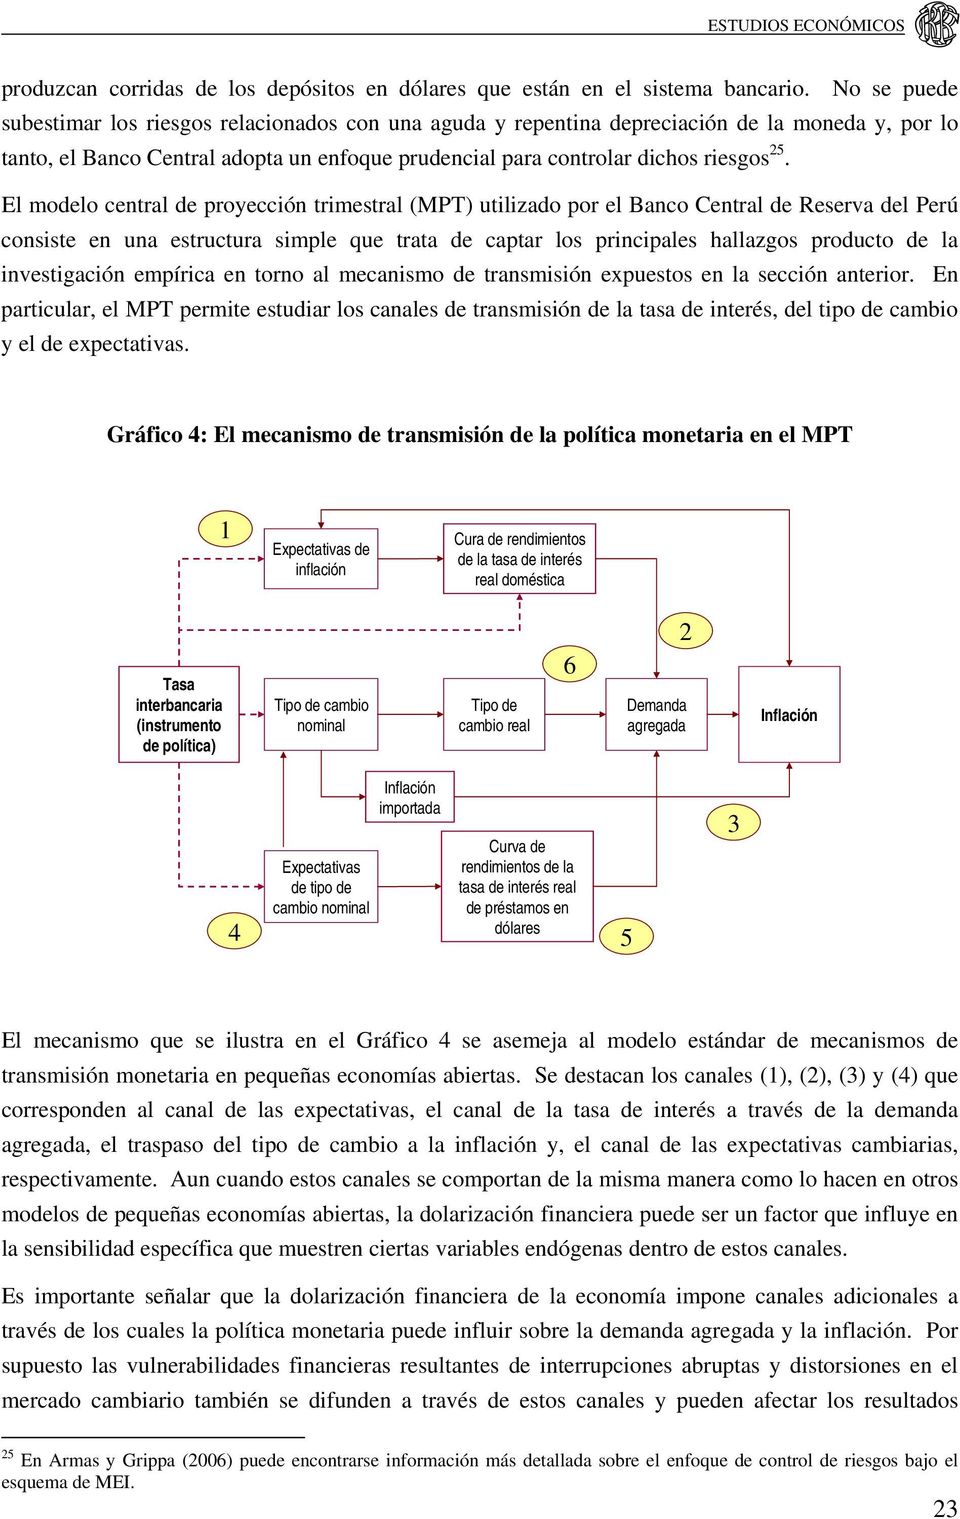 El modelo central de proyección trimestral (MPT) utilizado por el Banco Central de Reserva del Perú consiste en una estructura simple que trata de captar los principales hallazgos producto de la